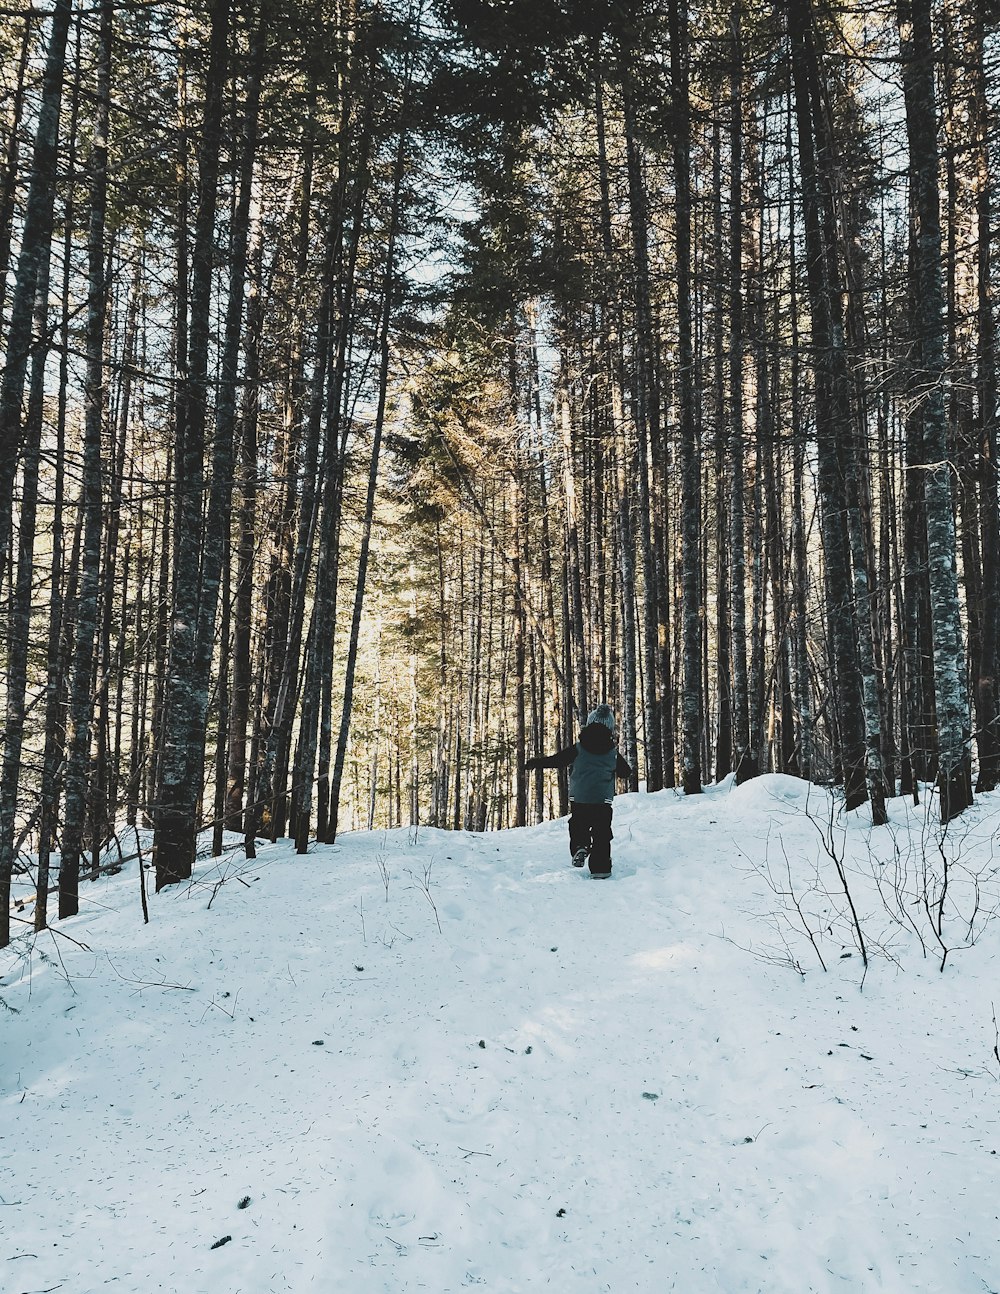 Person in schwarzer Jacke, die tagsüber auf schneebedecktem Boden in der Nähe von Bäumen steht